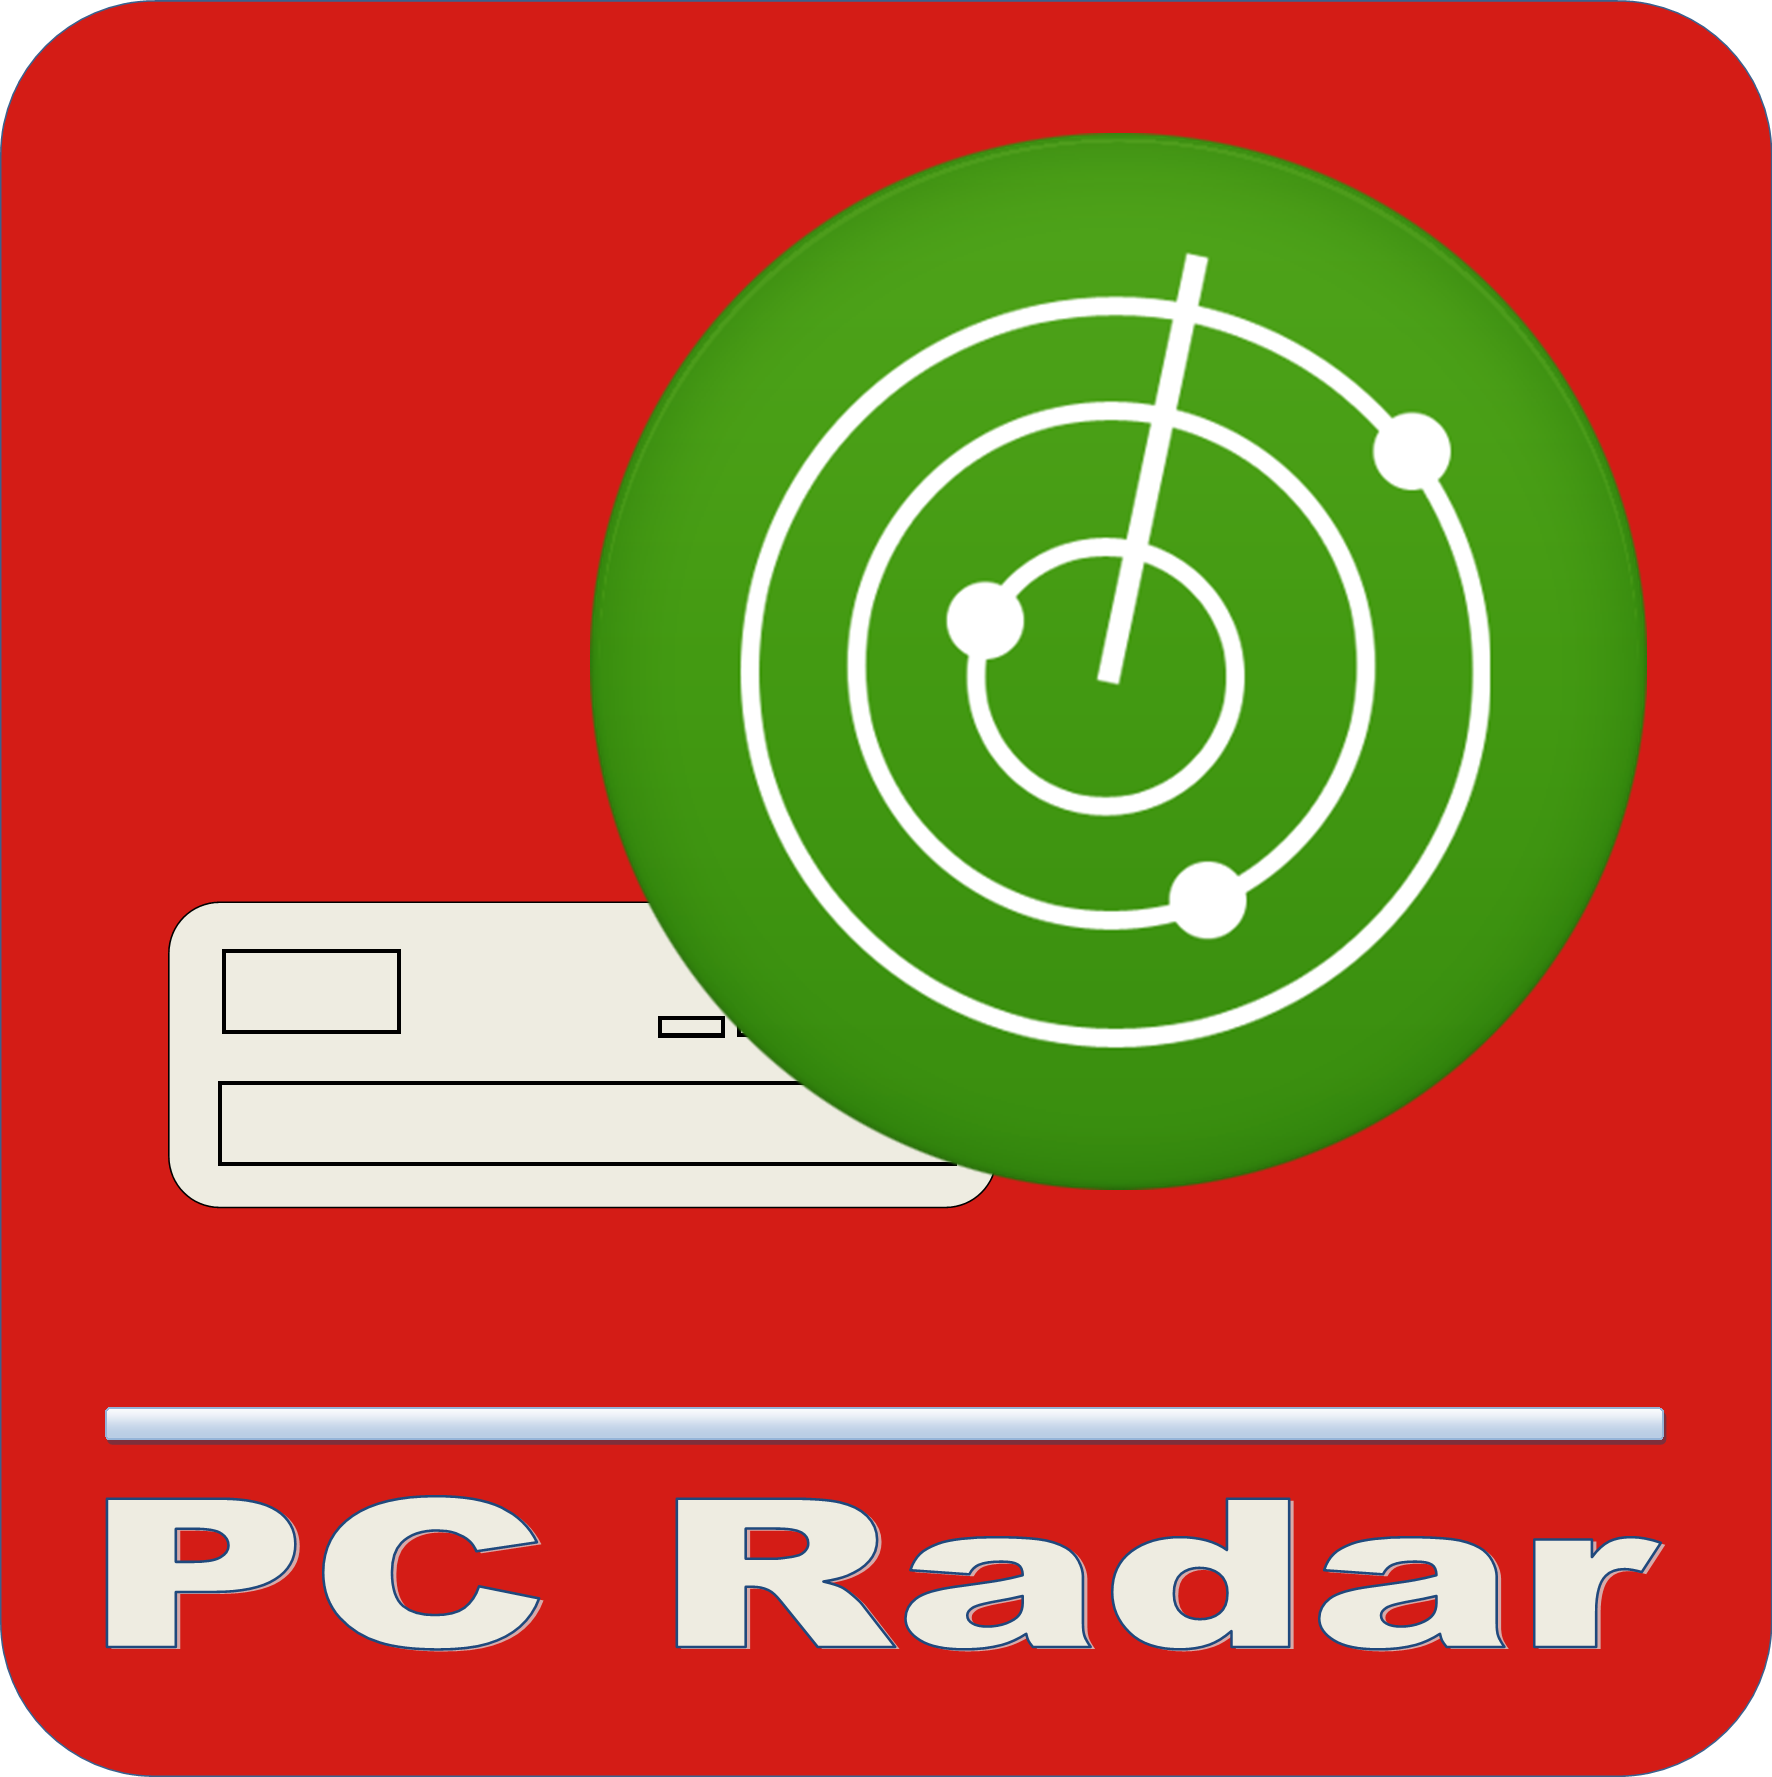 PC Radar